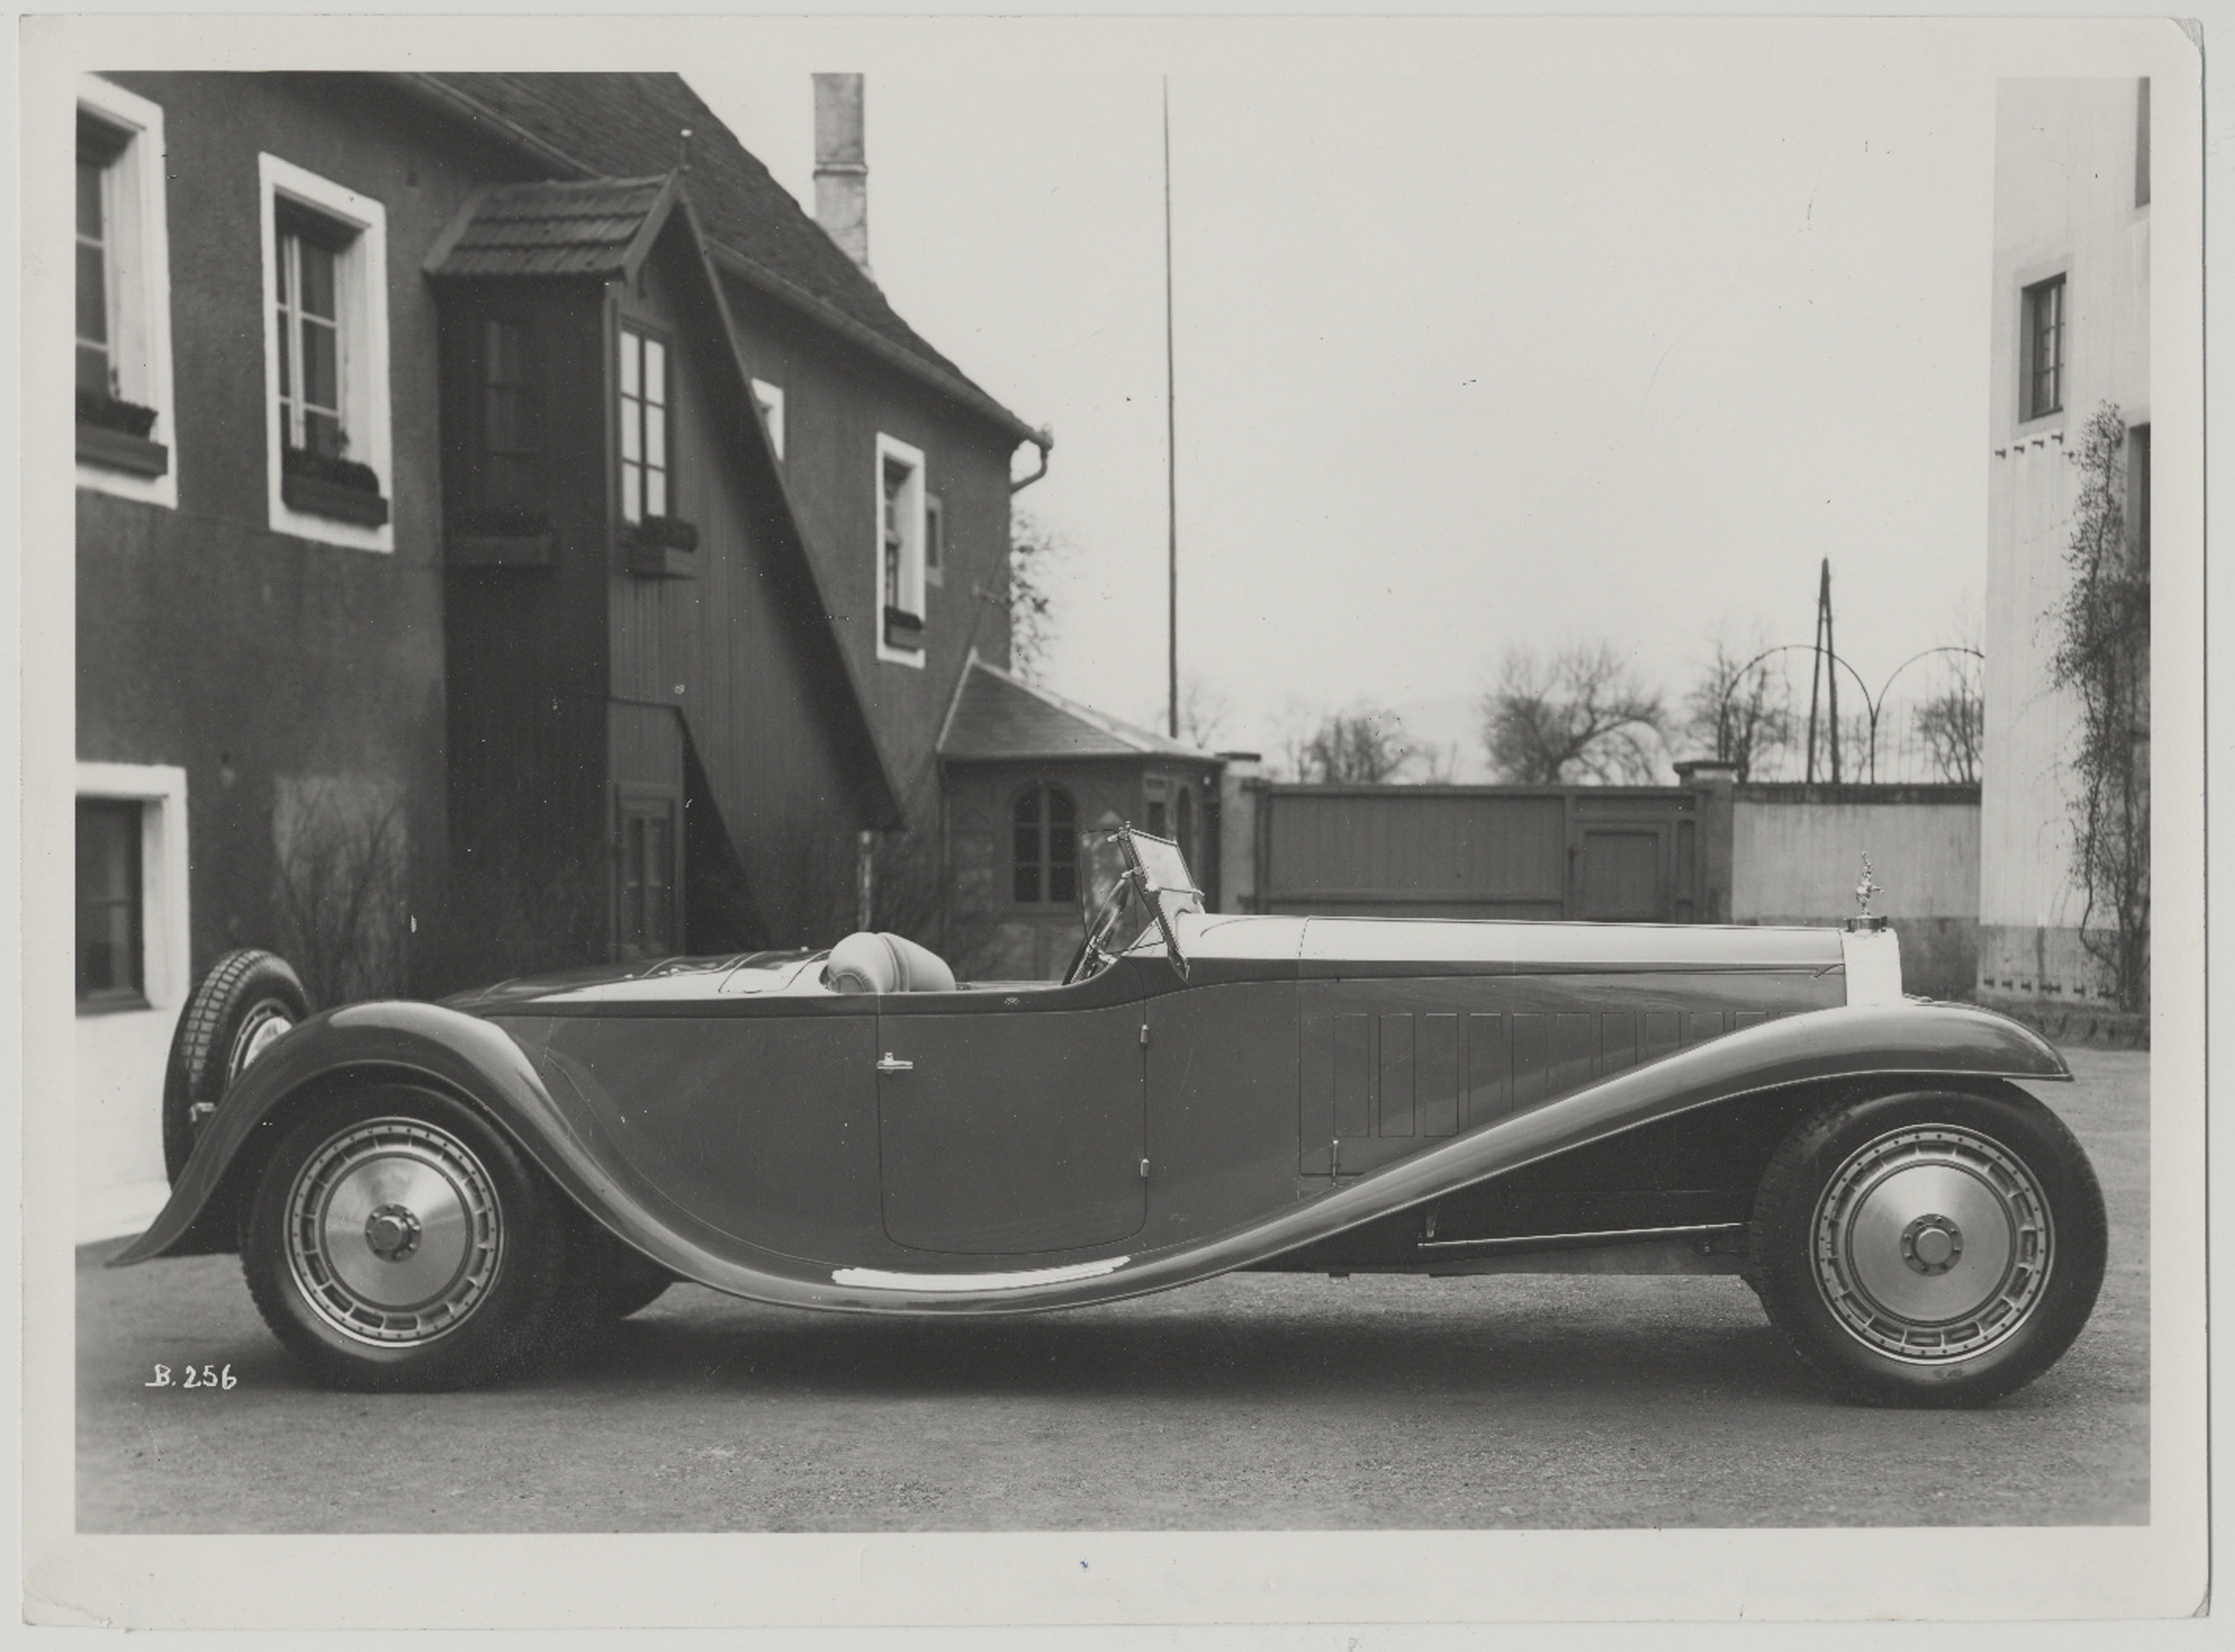 Первый прототип был построен в 1926 году - он имел сверхдлинную колесную базу и еще больший двигатель с рабочим объемом 14,7 литра. Несколько лет спустя, в 1932 году команде Bugatti удалось продать первый Royale парижскому промышленнику Арманду Эдерс